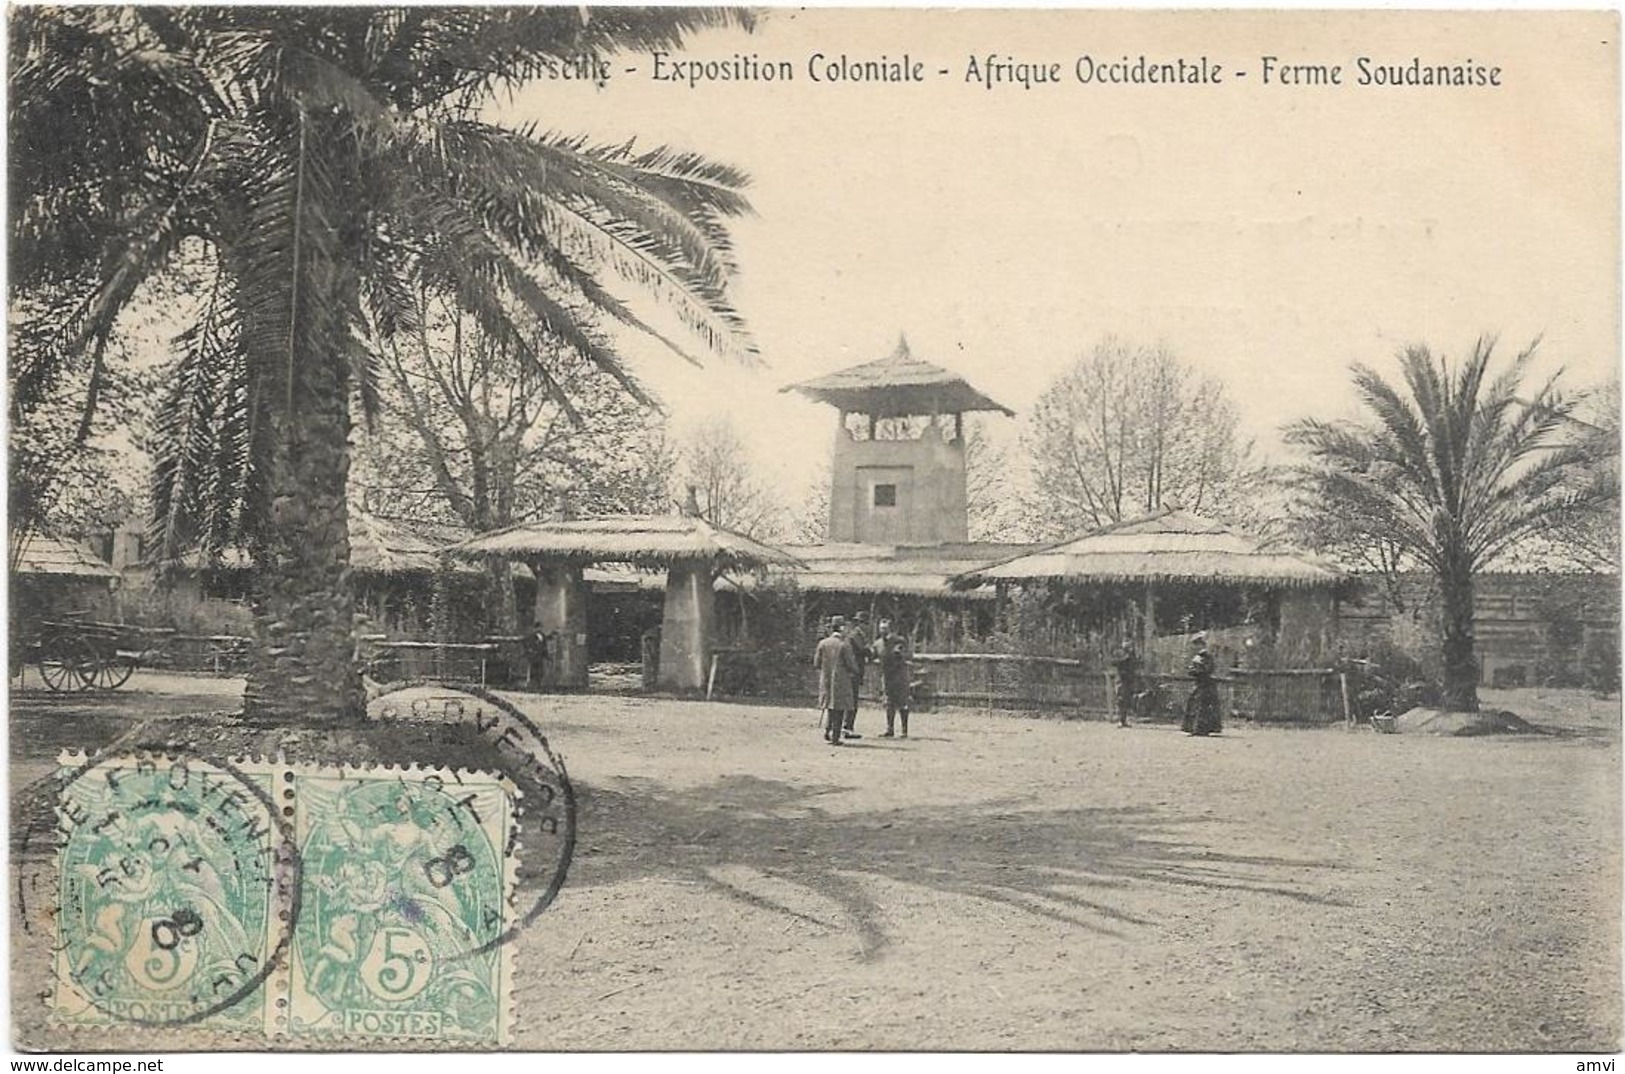 205 - 3849 13 Marseille, Exposition Coloniale - Afrique Occidentale - Ferme Soudanaise - Paire Blanc - Colonial Exhibitions 1906 - 1922